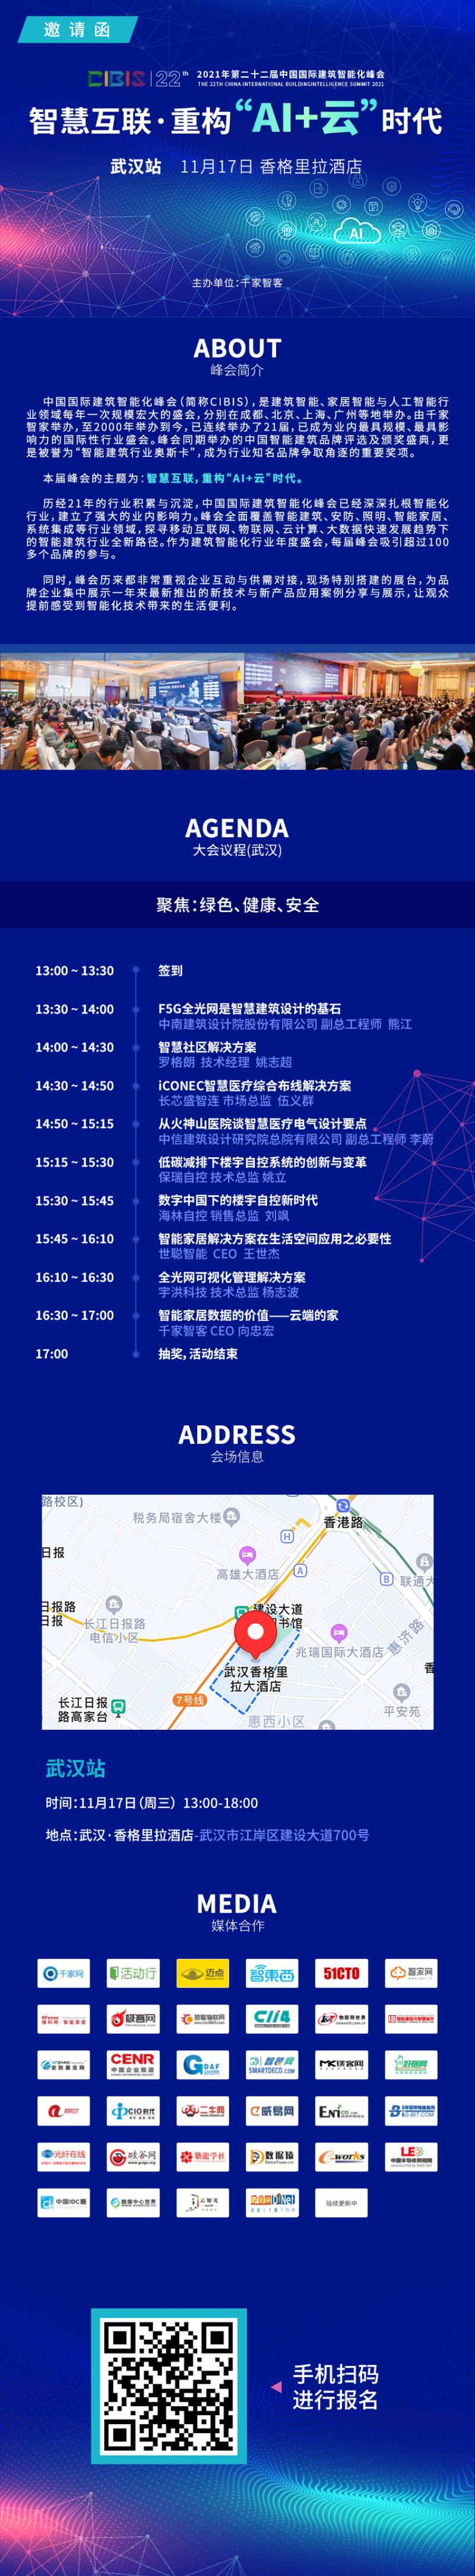 倒计时15天丨2021年第22届中国国际建筑智能化峰会——武汉站 议程公布！